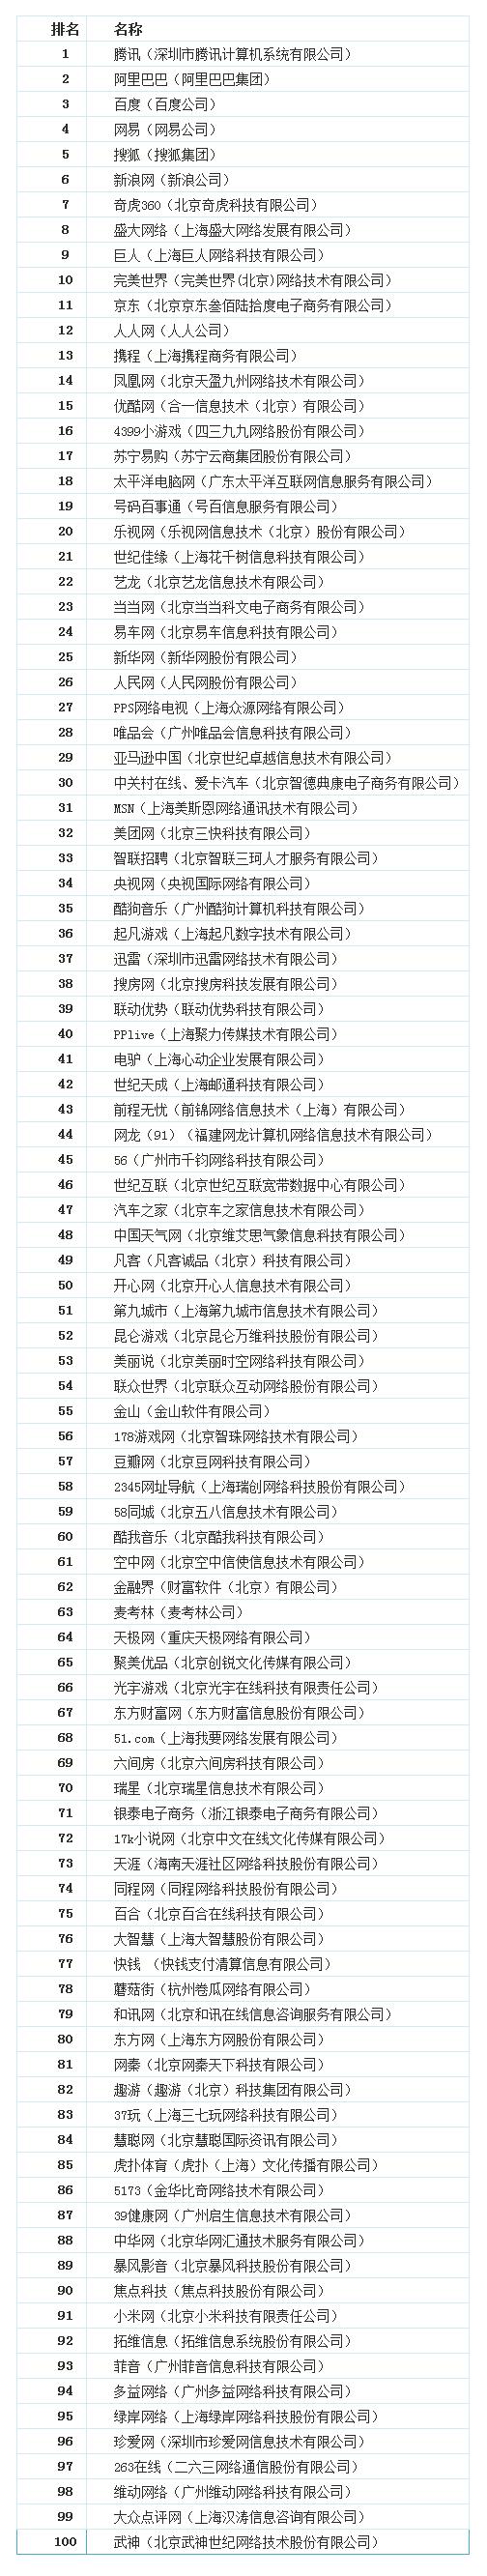 2013中国互联网100强榜单